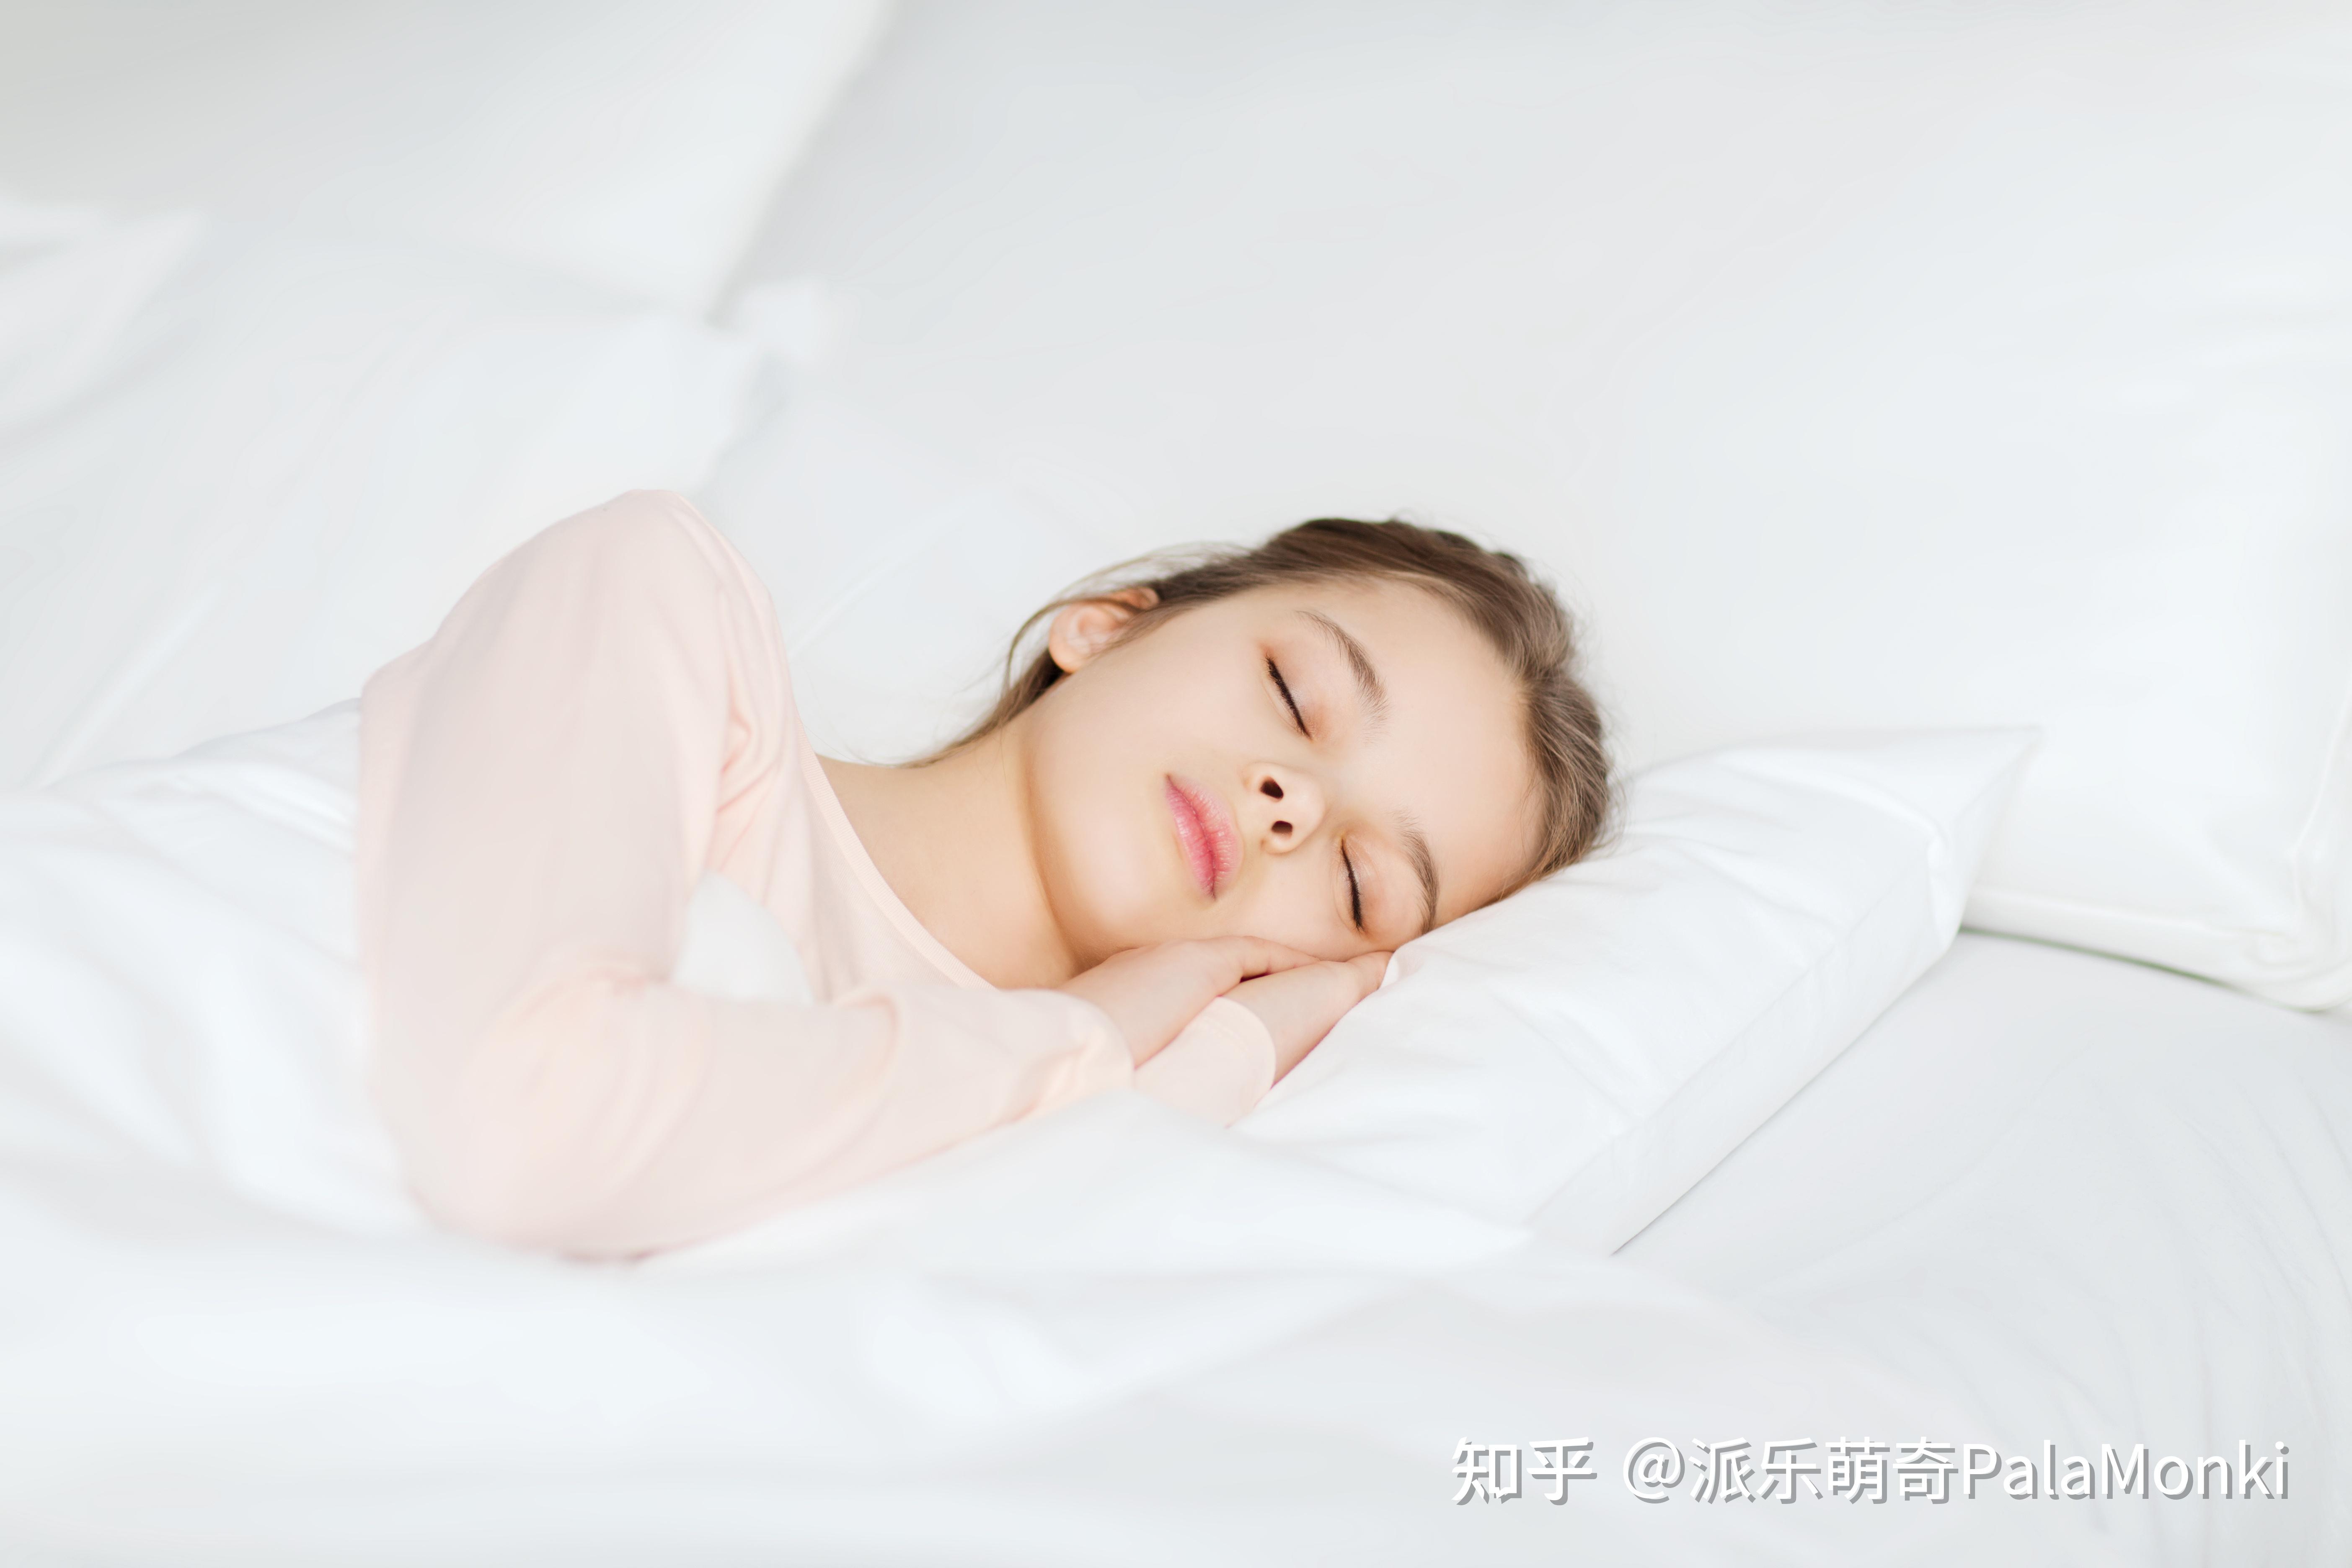 孕晚期侧卧睡觉正确姿势图解左侧卧（孕晚期睡不好，"左侧卧"的教条不必严格遵守，灵活变通睡得更好） | 说明书网